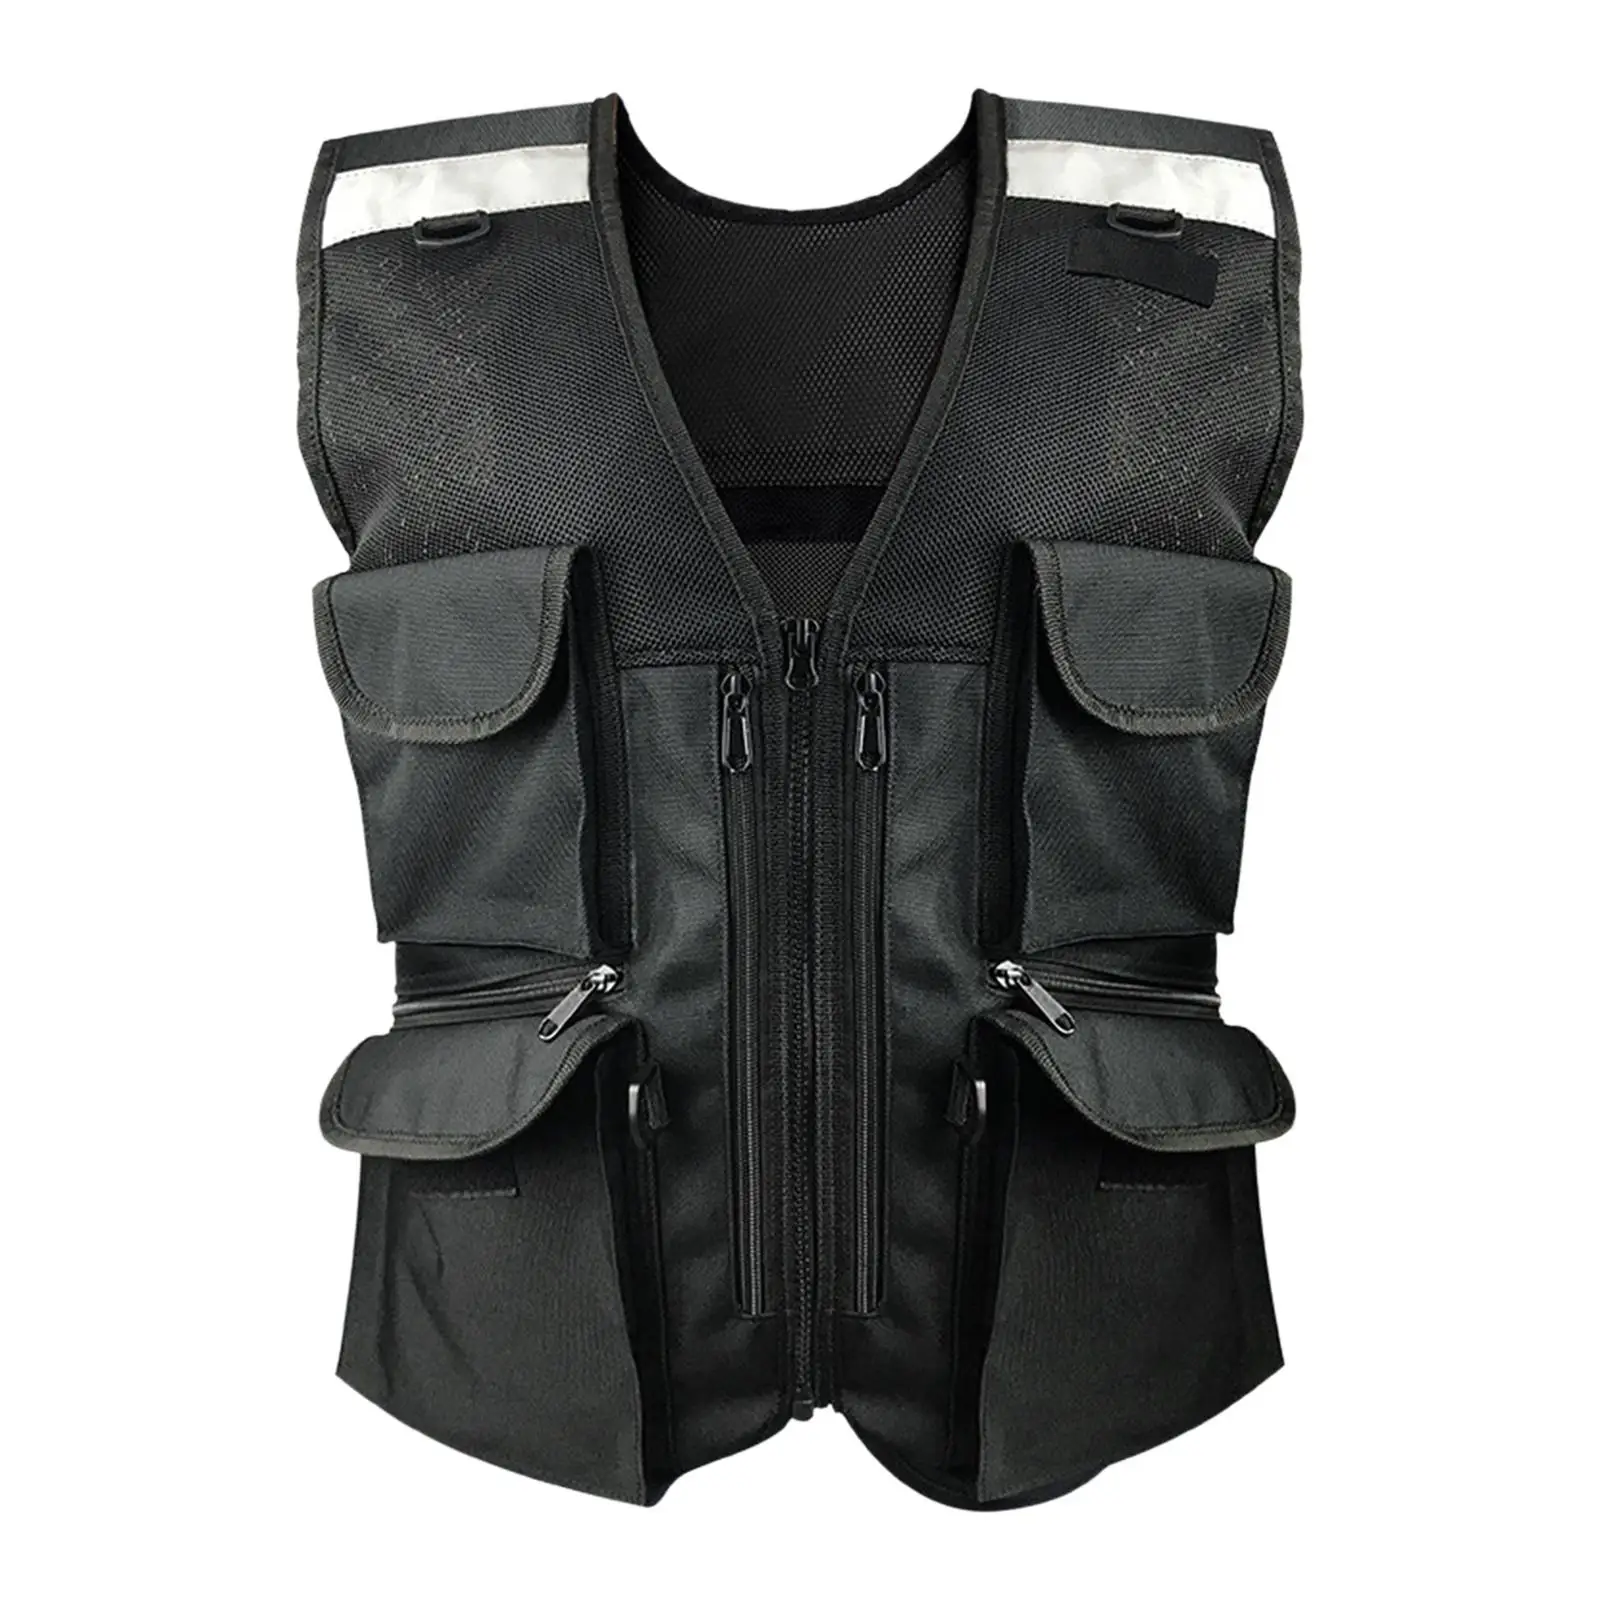 Reflective Safety Vest Multi Pockets Professional Construction Vest